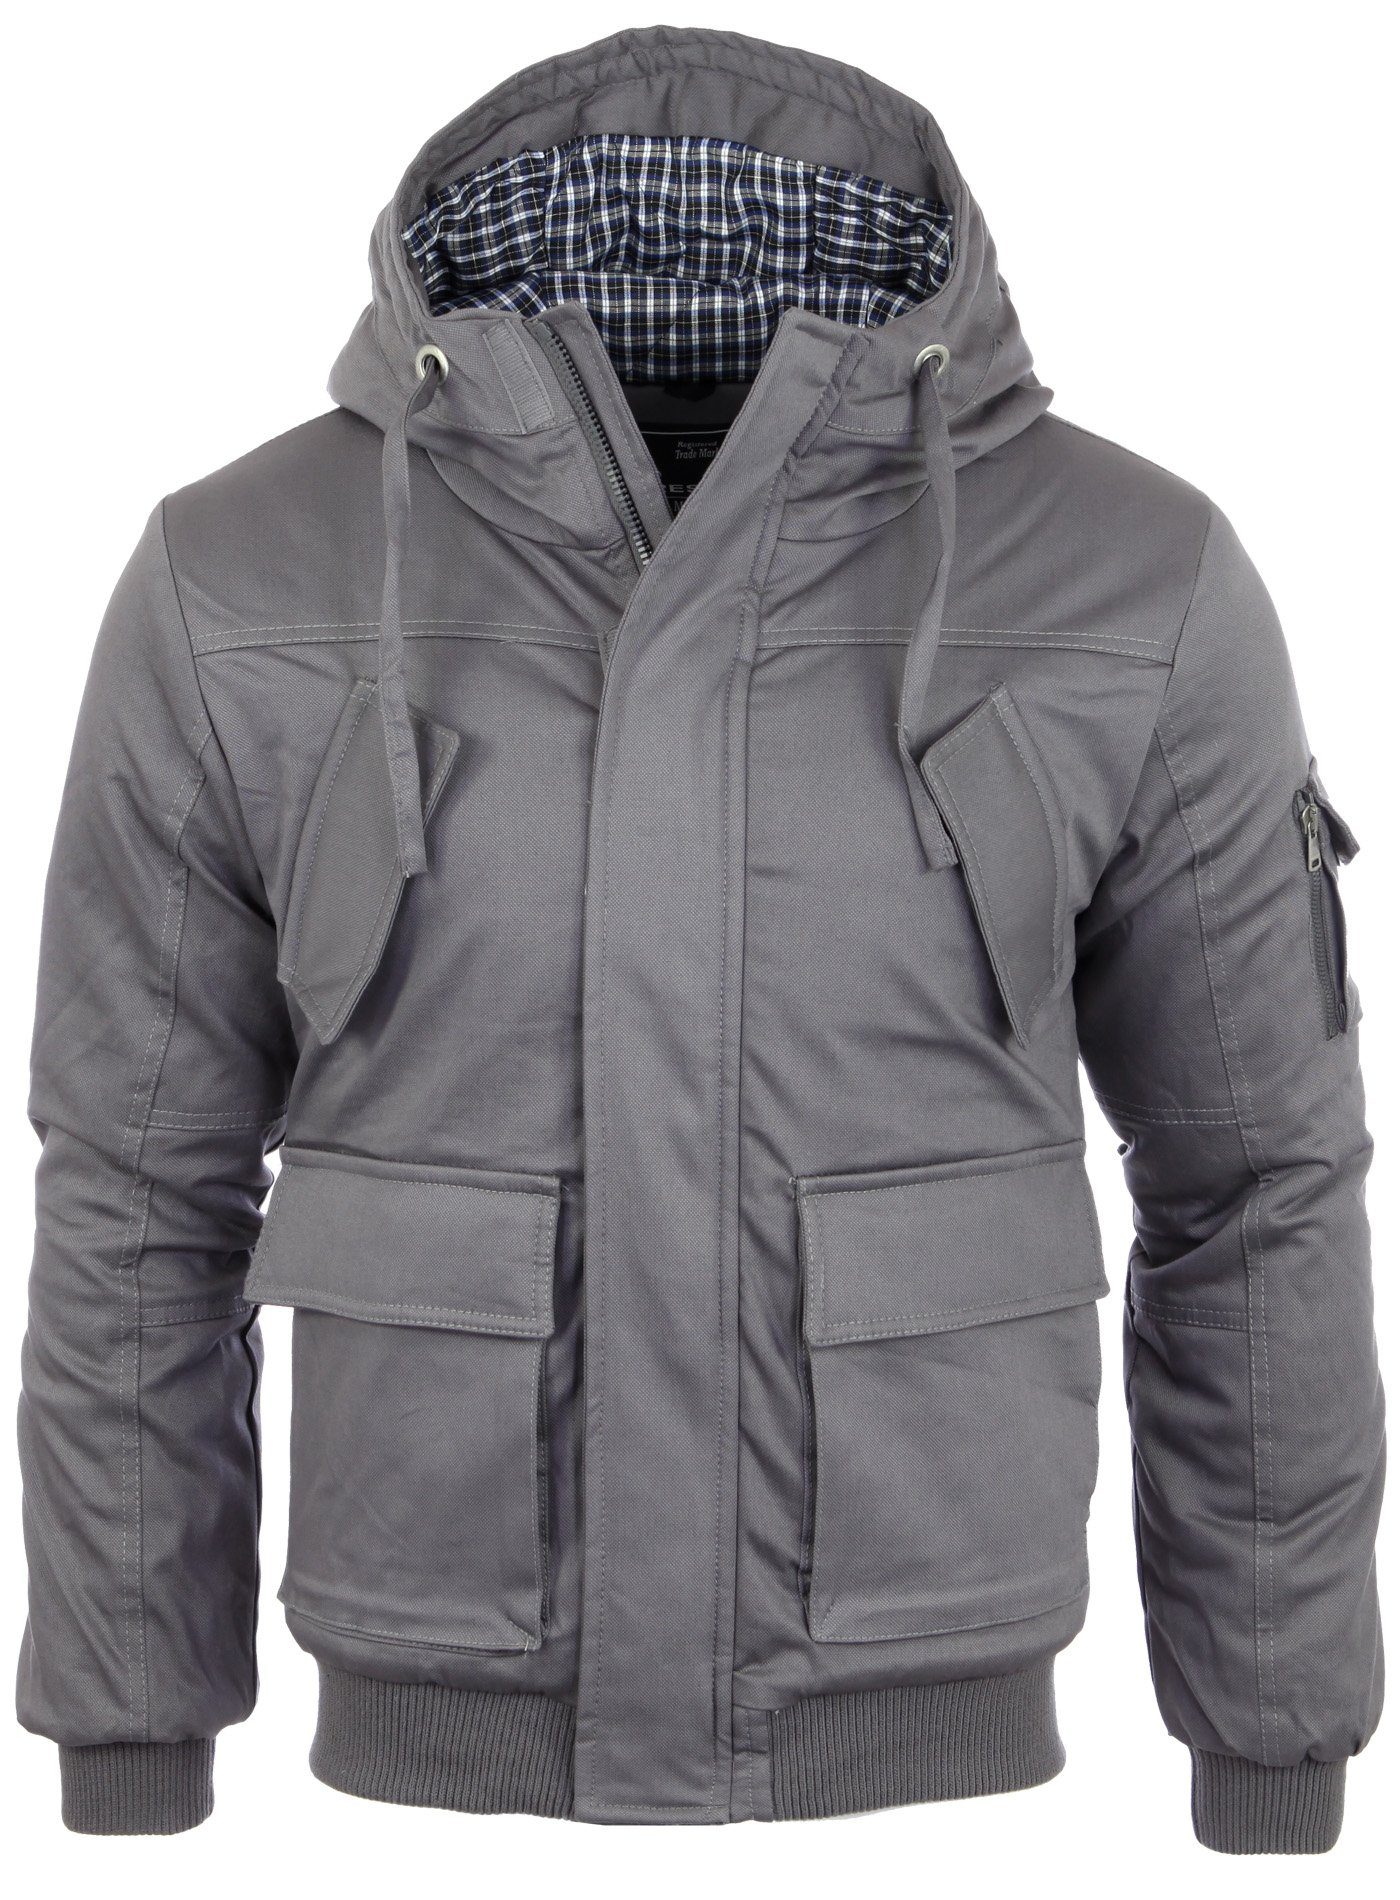 Reslad Winterjacke »Reslad Winterjacke Herren-Jacke dick gefütterte« warme  Winter Jacke mit Kapuze online kaufen | OTTO